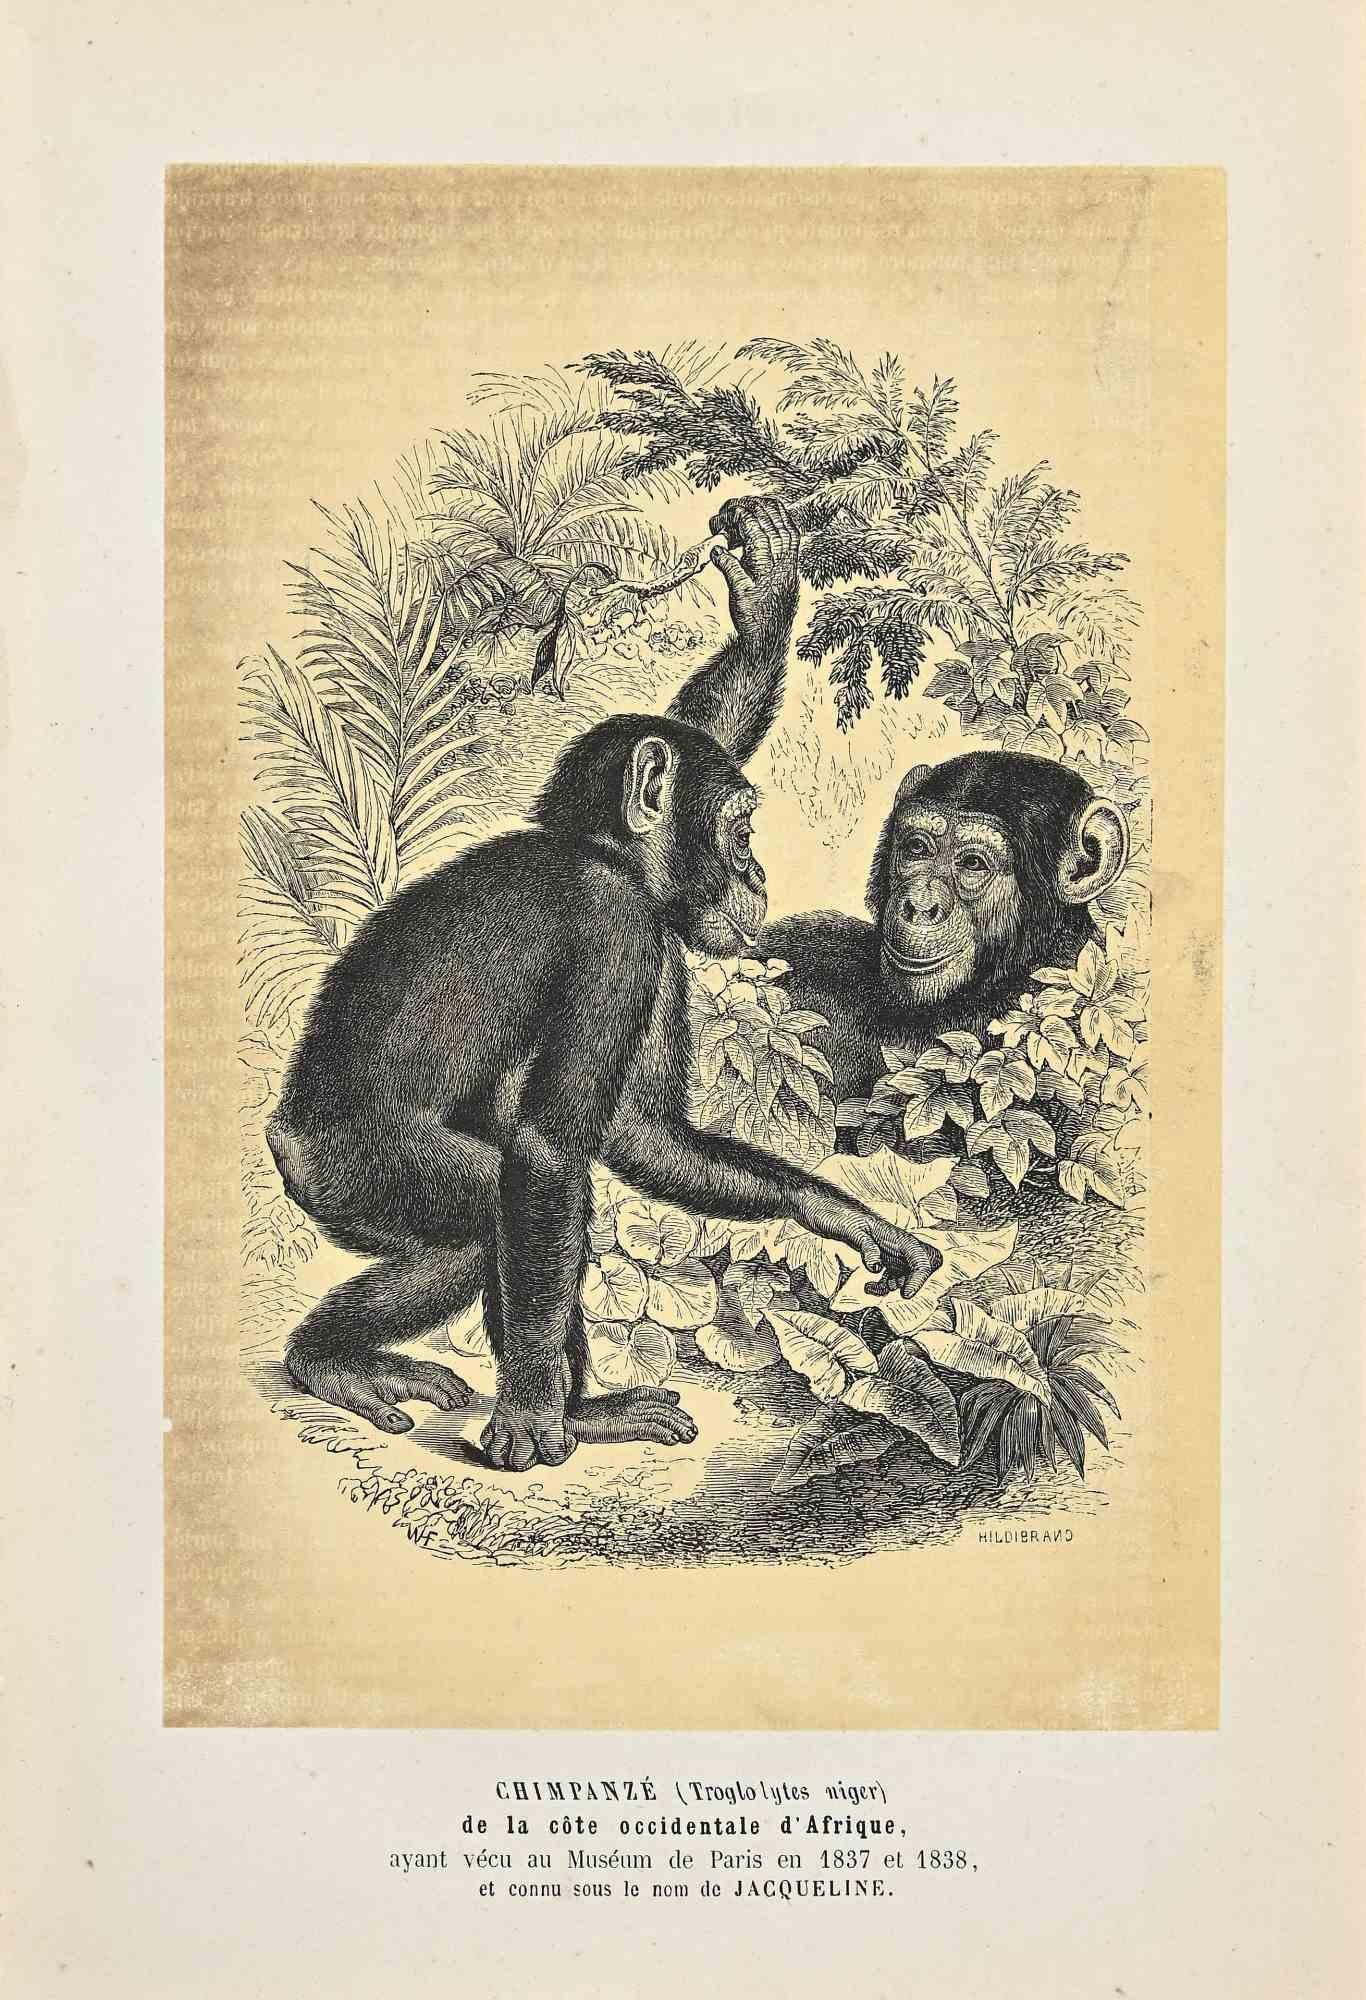 Chimpanzé est une lithographie originale sur papier couleur ivoire, réalisée par Paul Gervais (1816-1879). L'œuvre est tirée de la série "Les Trois Règnes de la Nature", et a été publiée en 1854.

Bonnes conditions à l'exception de quelques